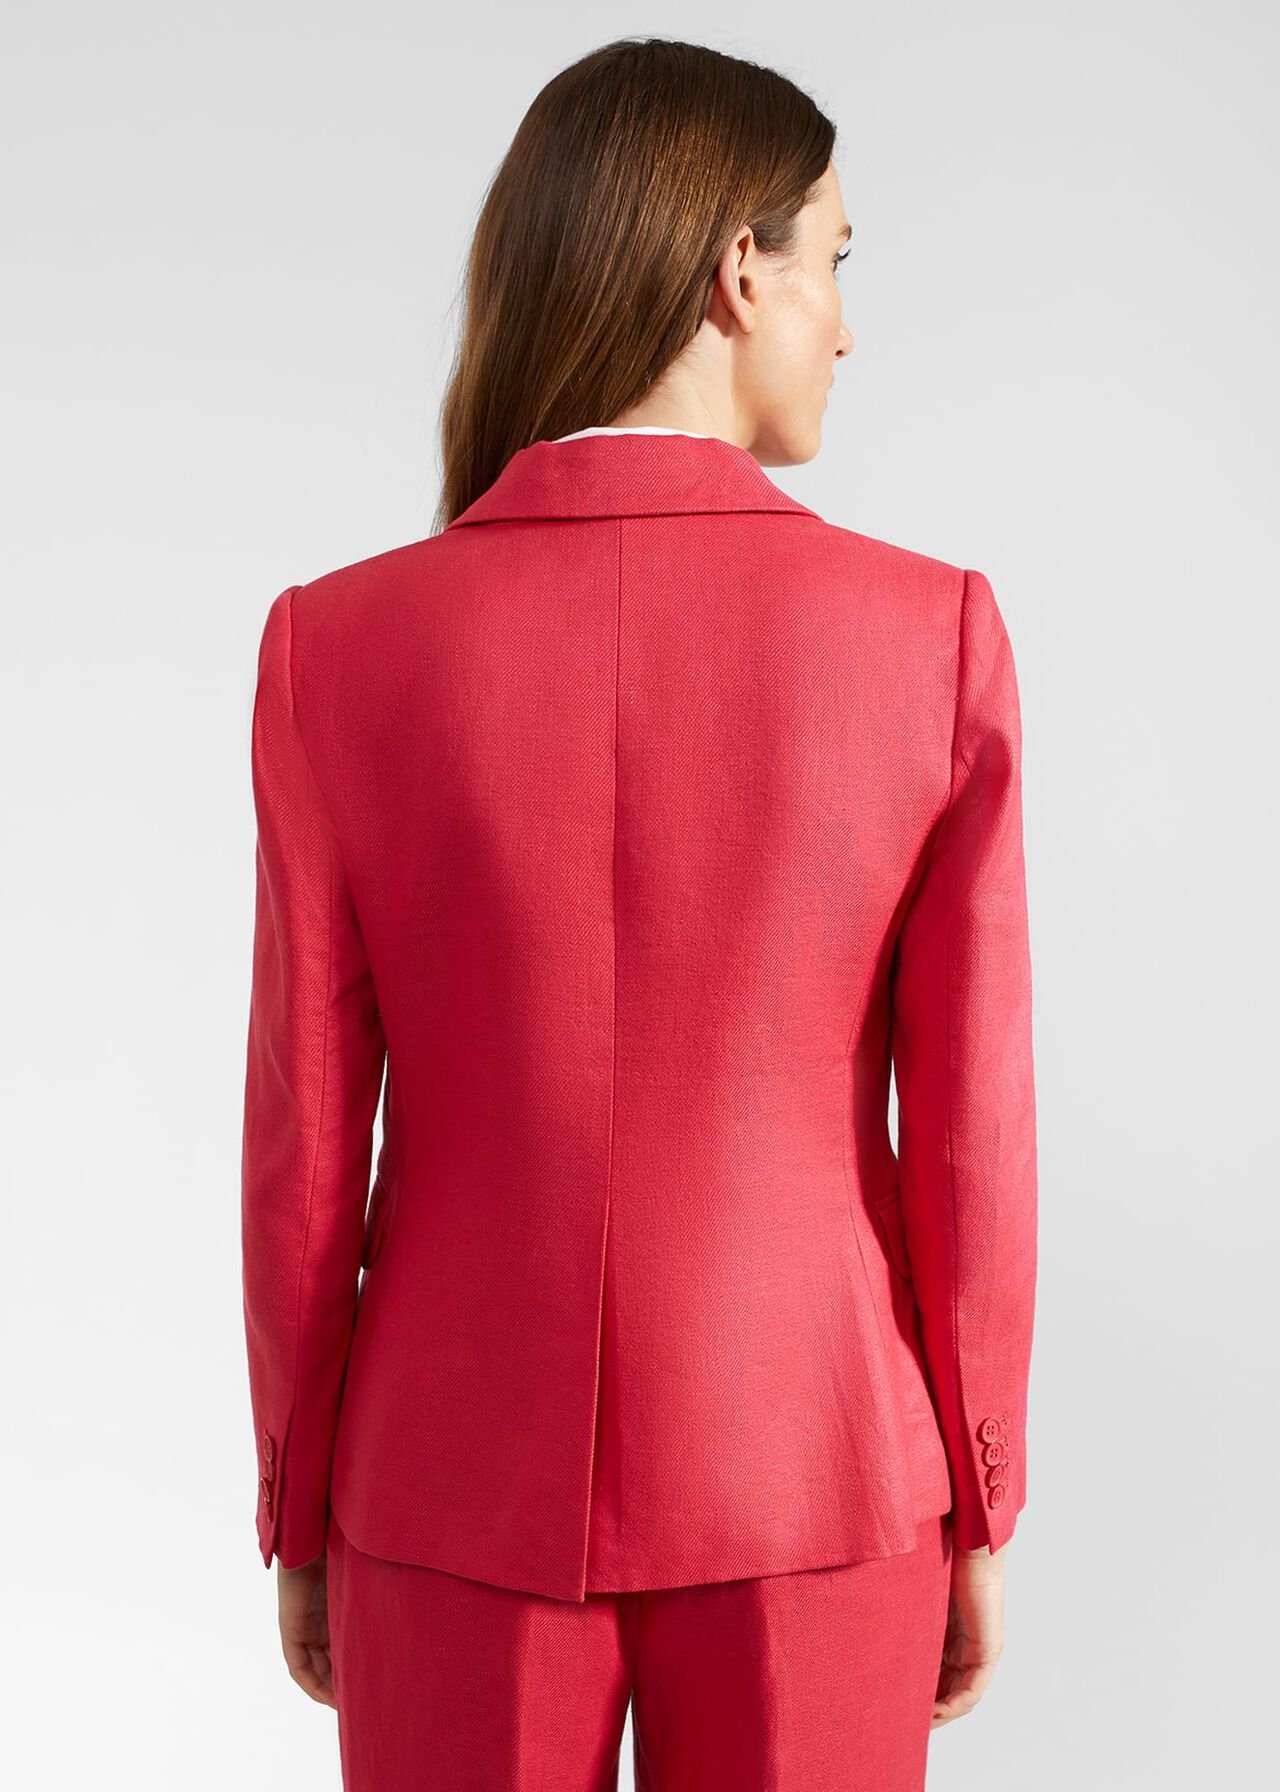 Mirabel Linen Jacket, Raspberry Pink, hi-res